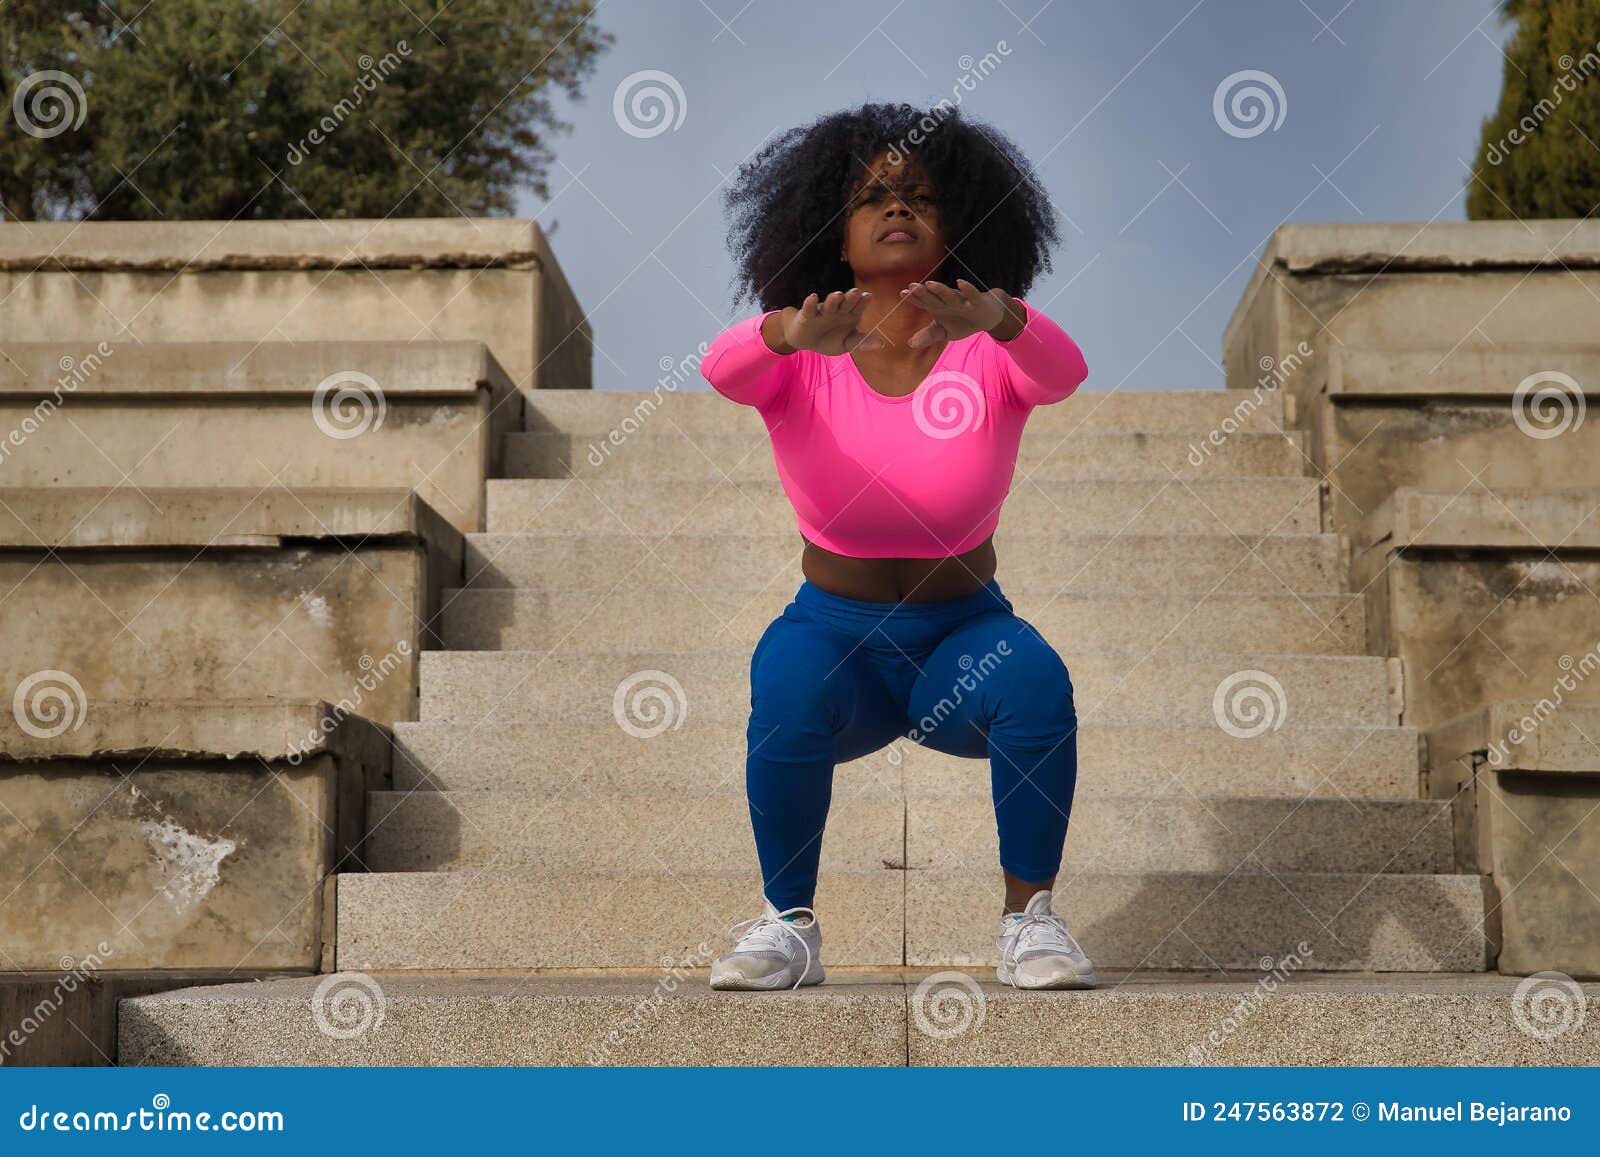 https://thumbs.dreamstime.com/z/mujer-afroamericana-con-pelo-afro-y-ropa-deportiva-camiseta-rosa-fluorescente-piernas-haciendo-ejercicios-de-squash-en-las-247563872.jpg